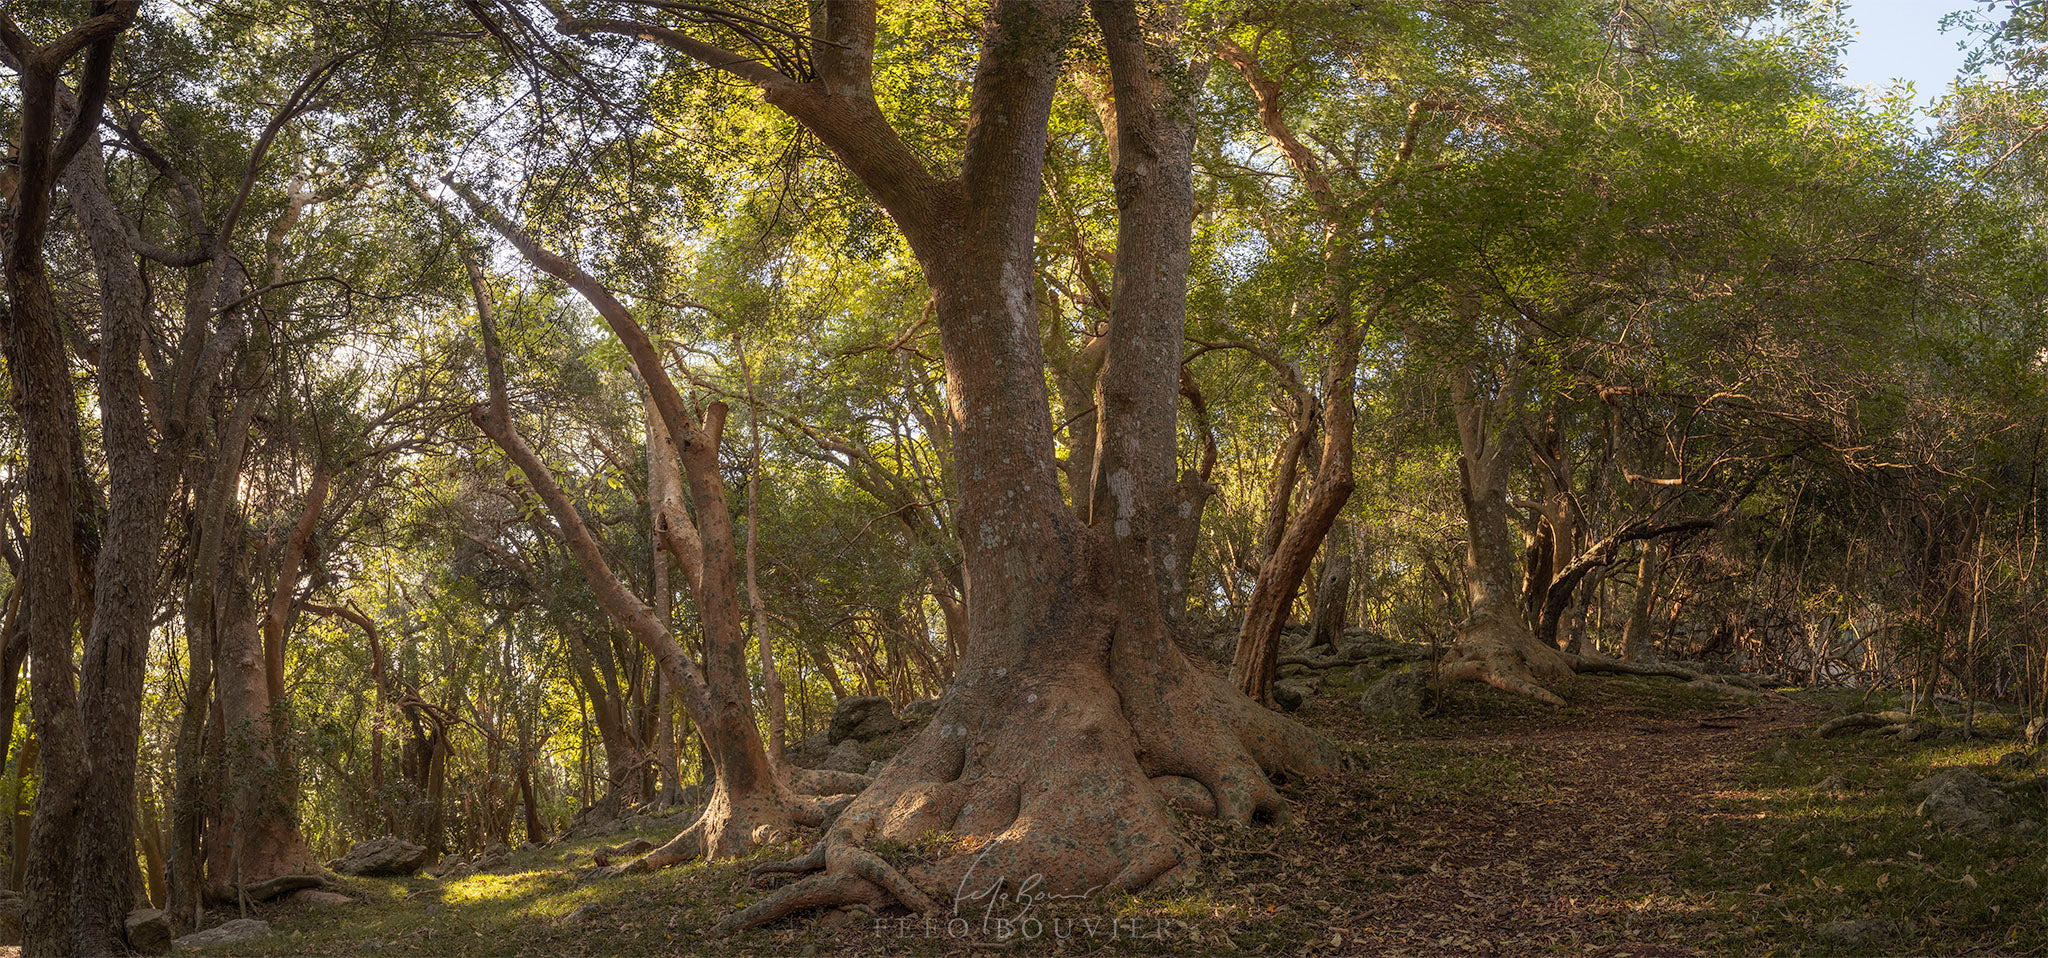 Bosque de Ombúes en el Cerro Arequita, Lavalleja, Uruguay